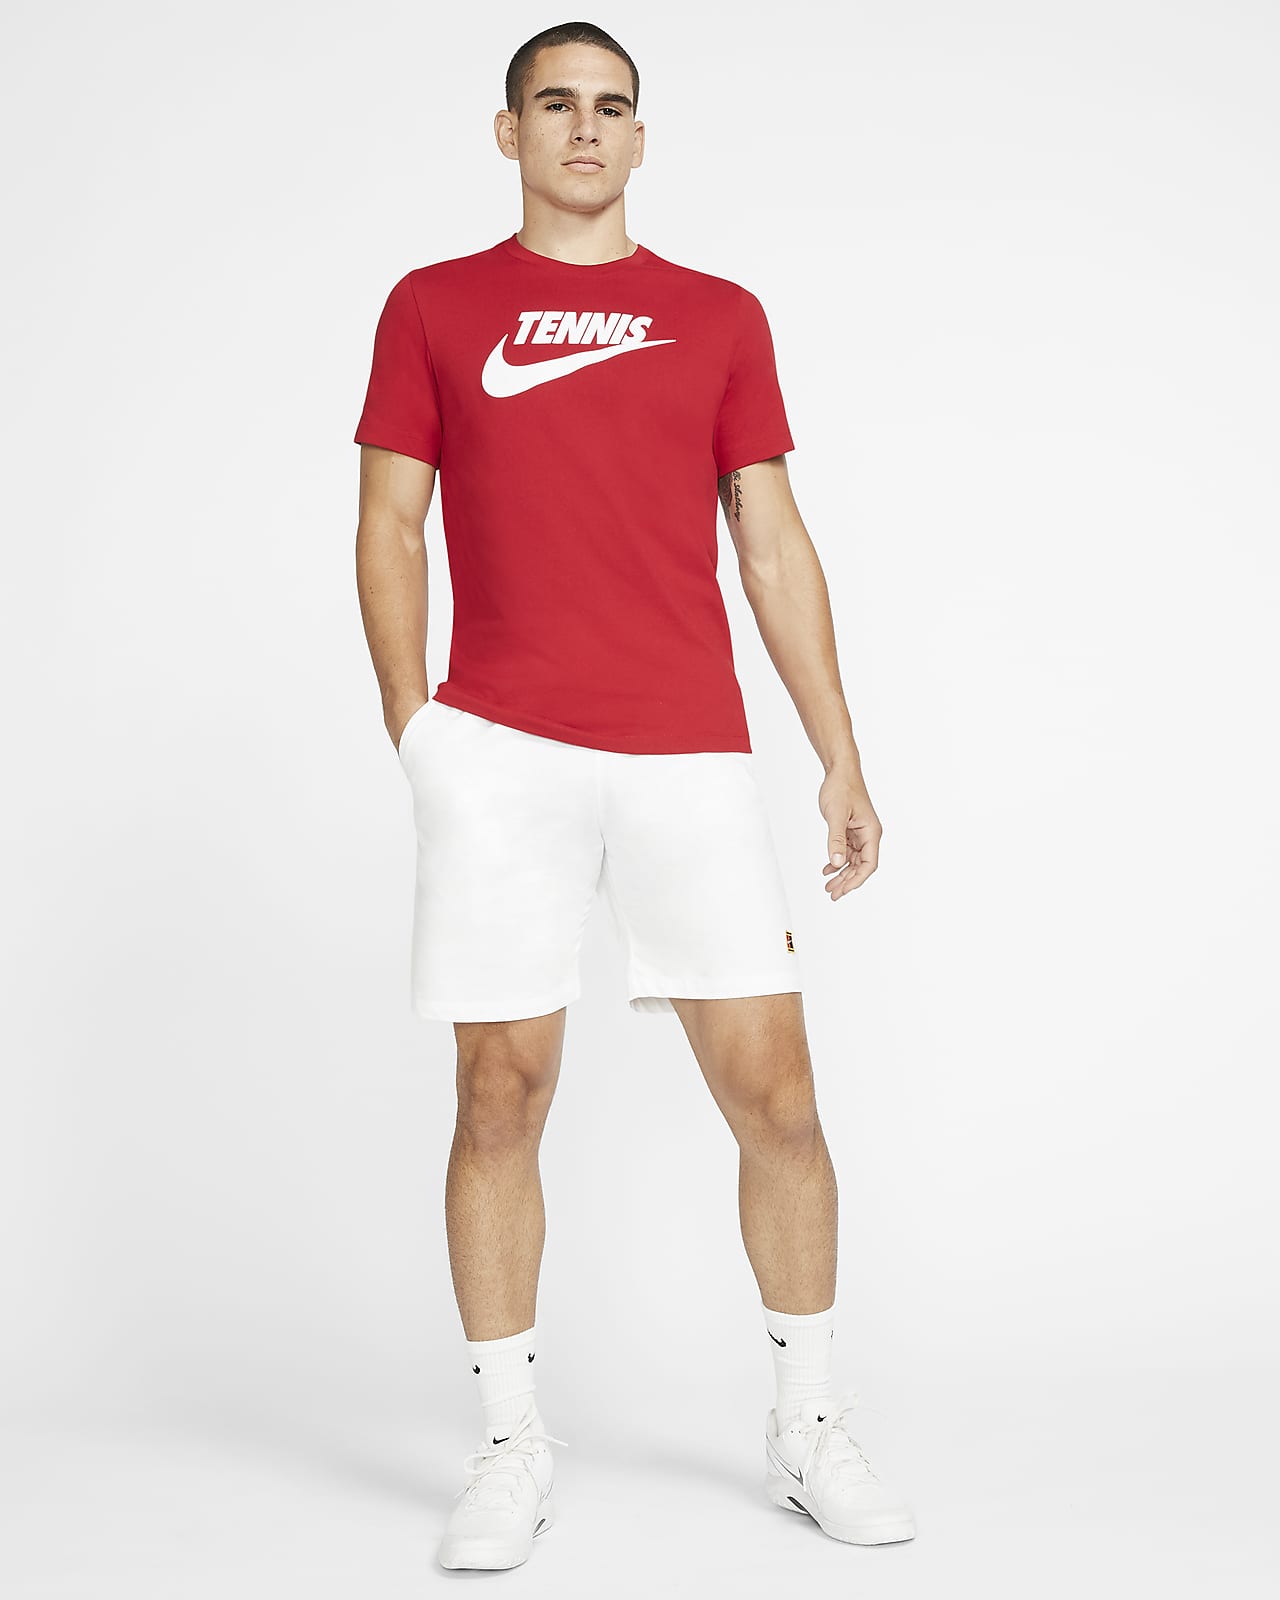 tennis dri fit shirts